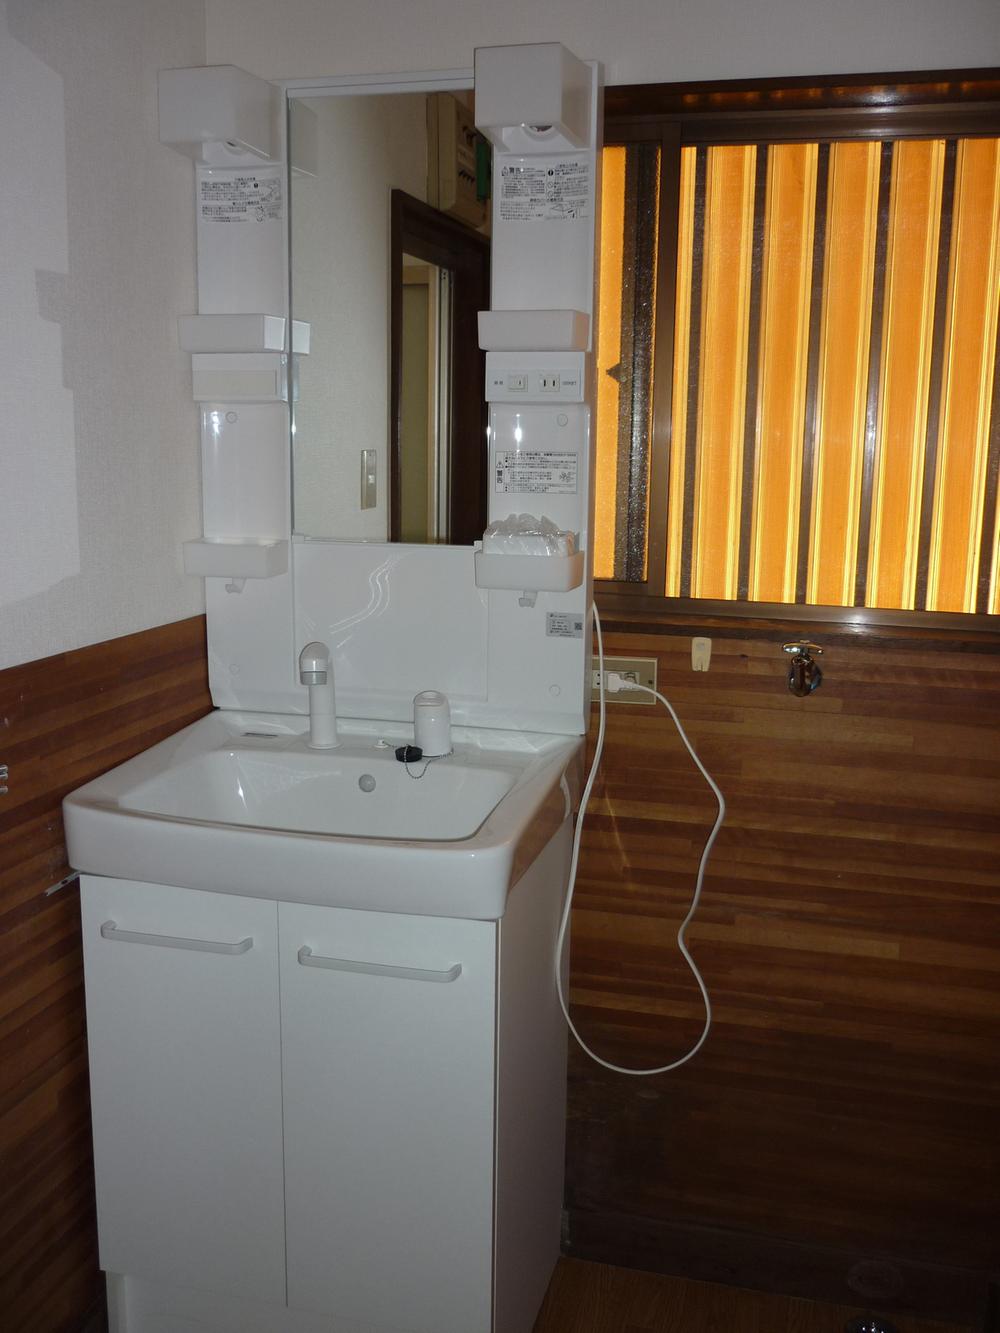 Wash basin, toilet. Local (12 May 2013) Shooting